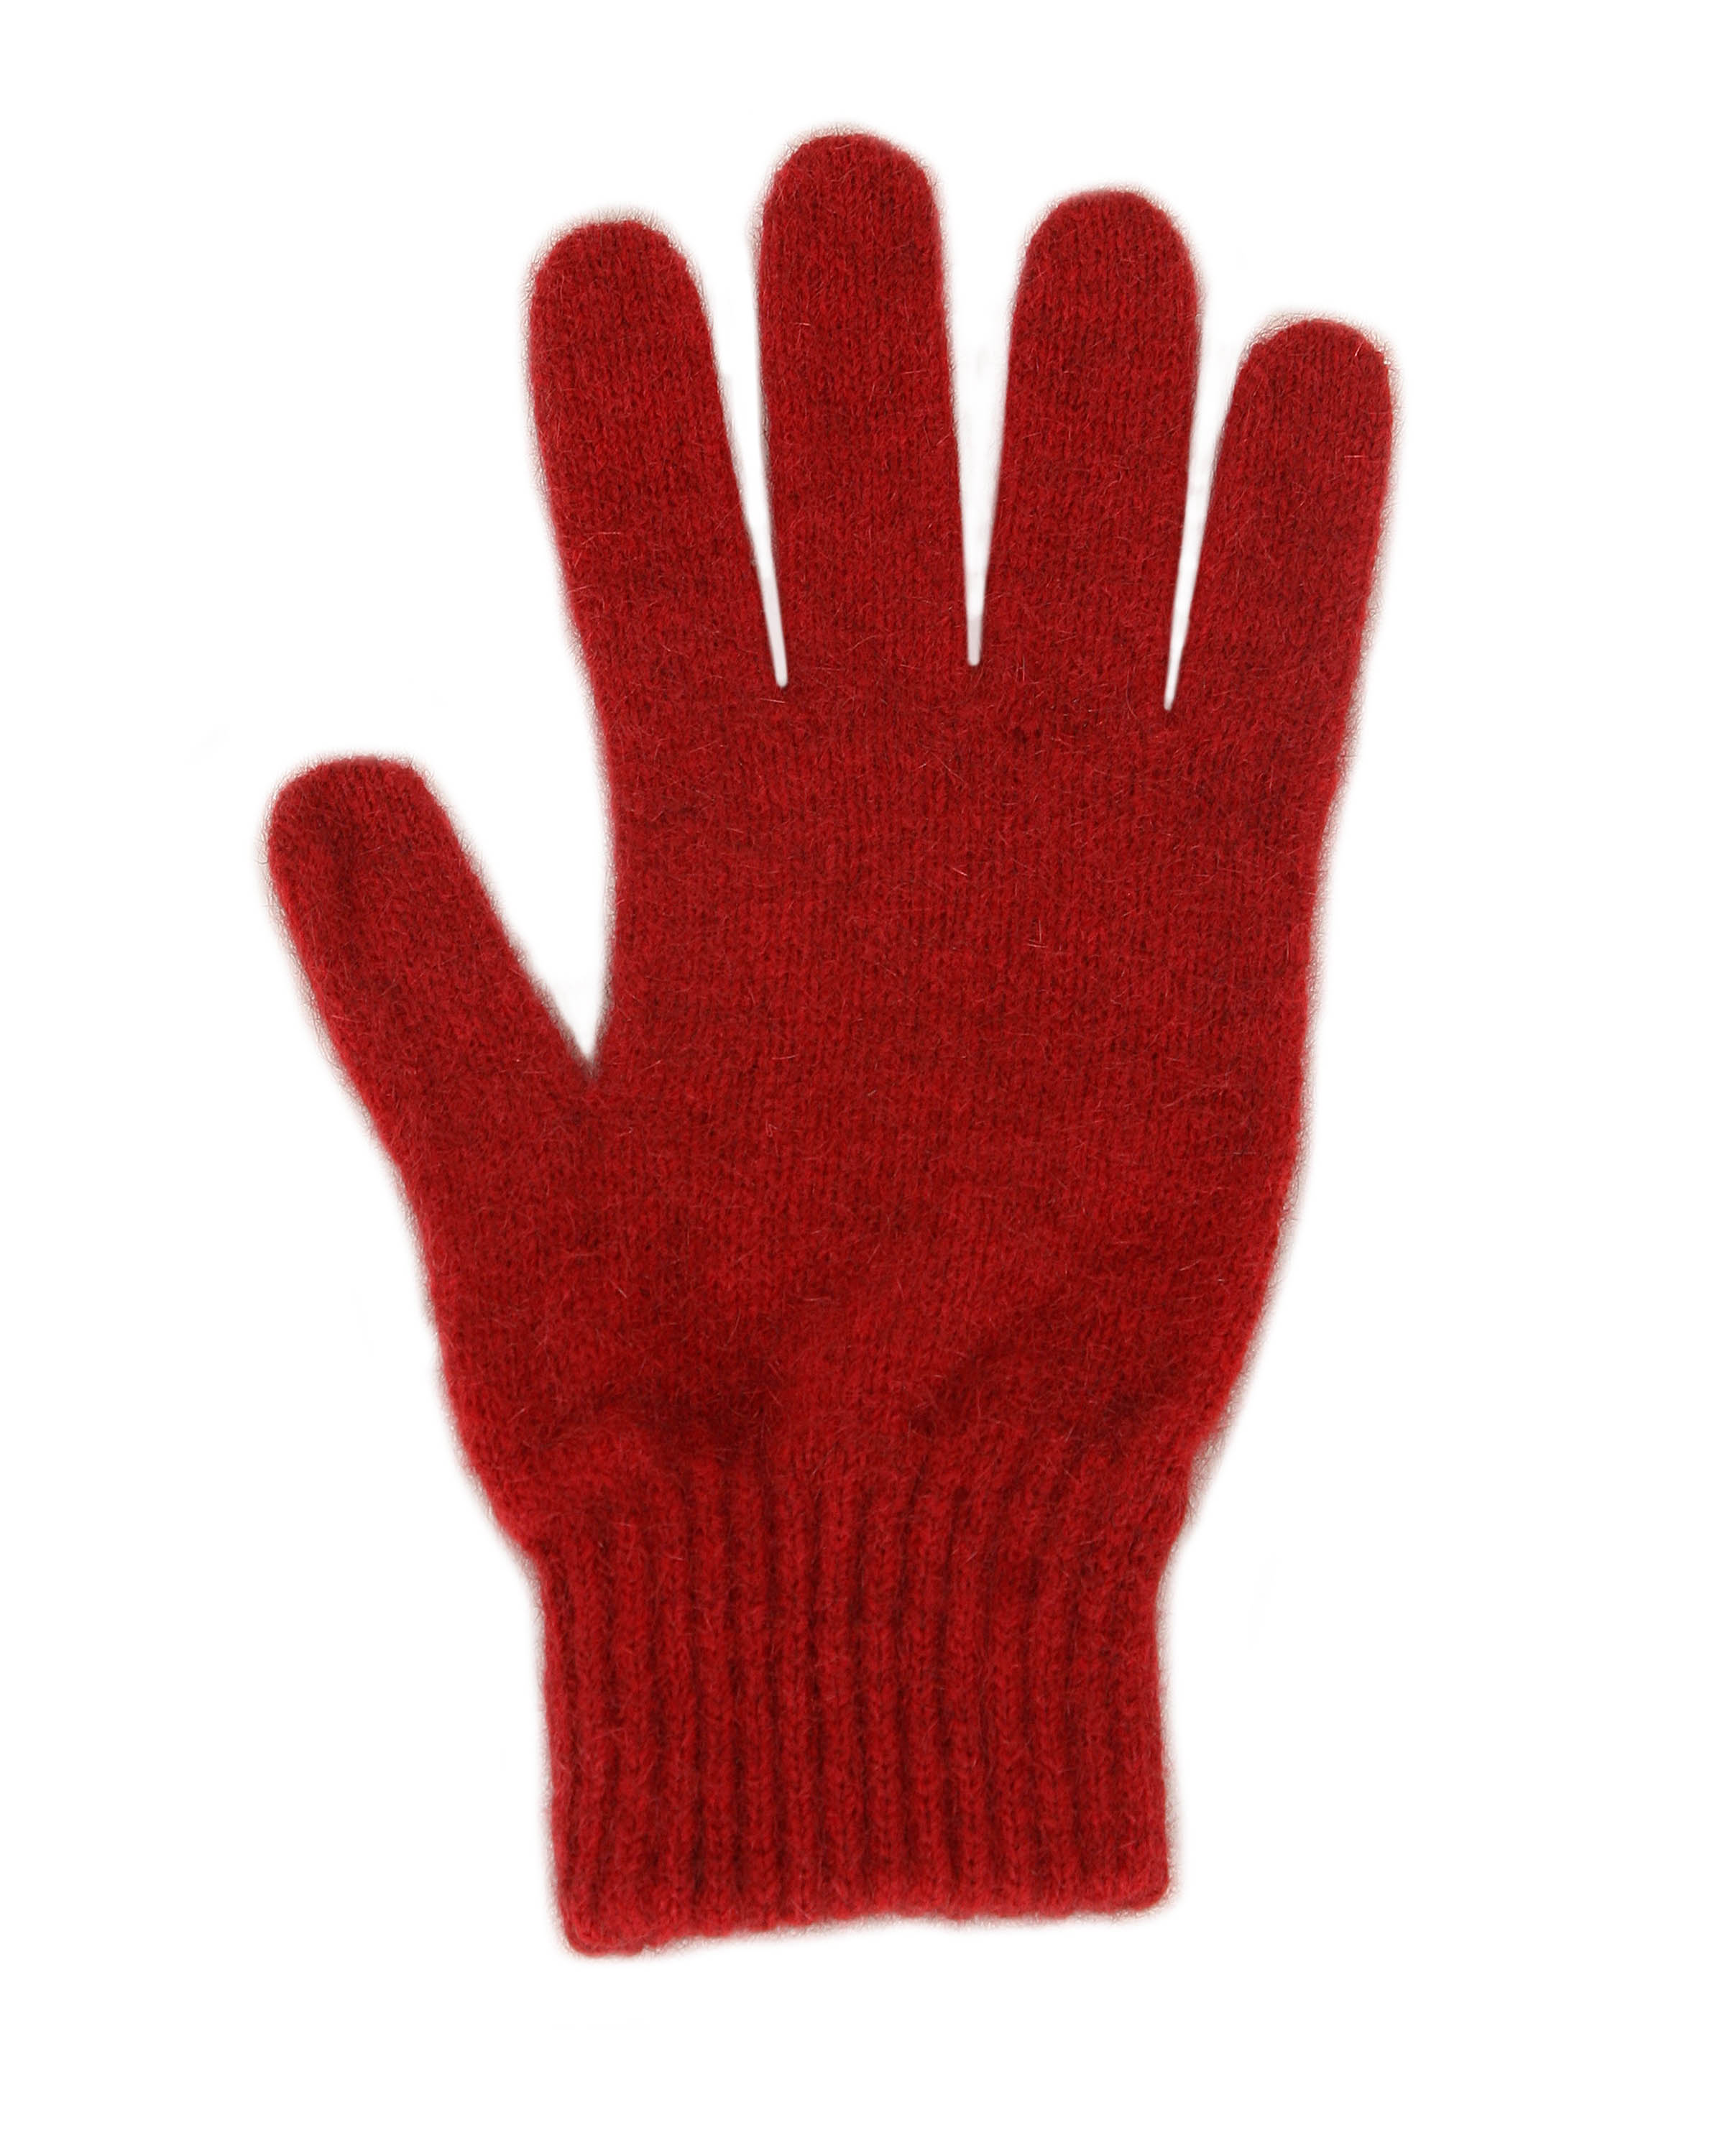 NZ Made Possum & Merino Full Finger Gloves - Sports Outdoors